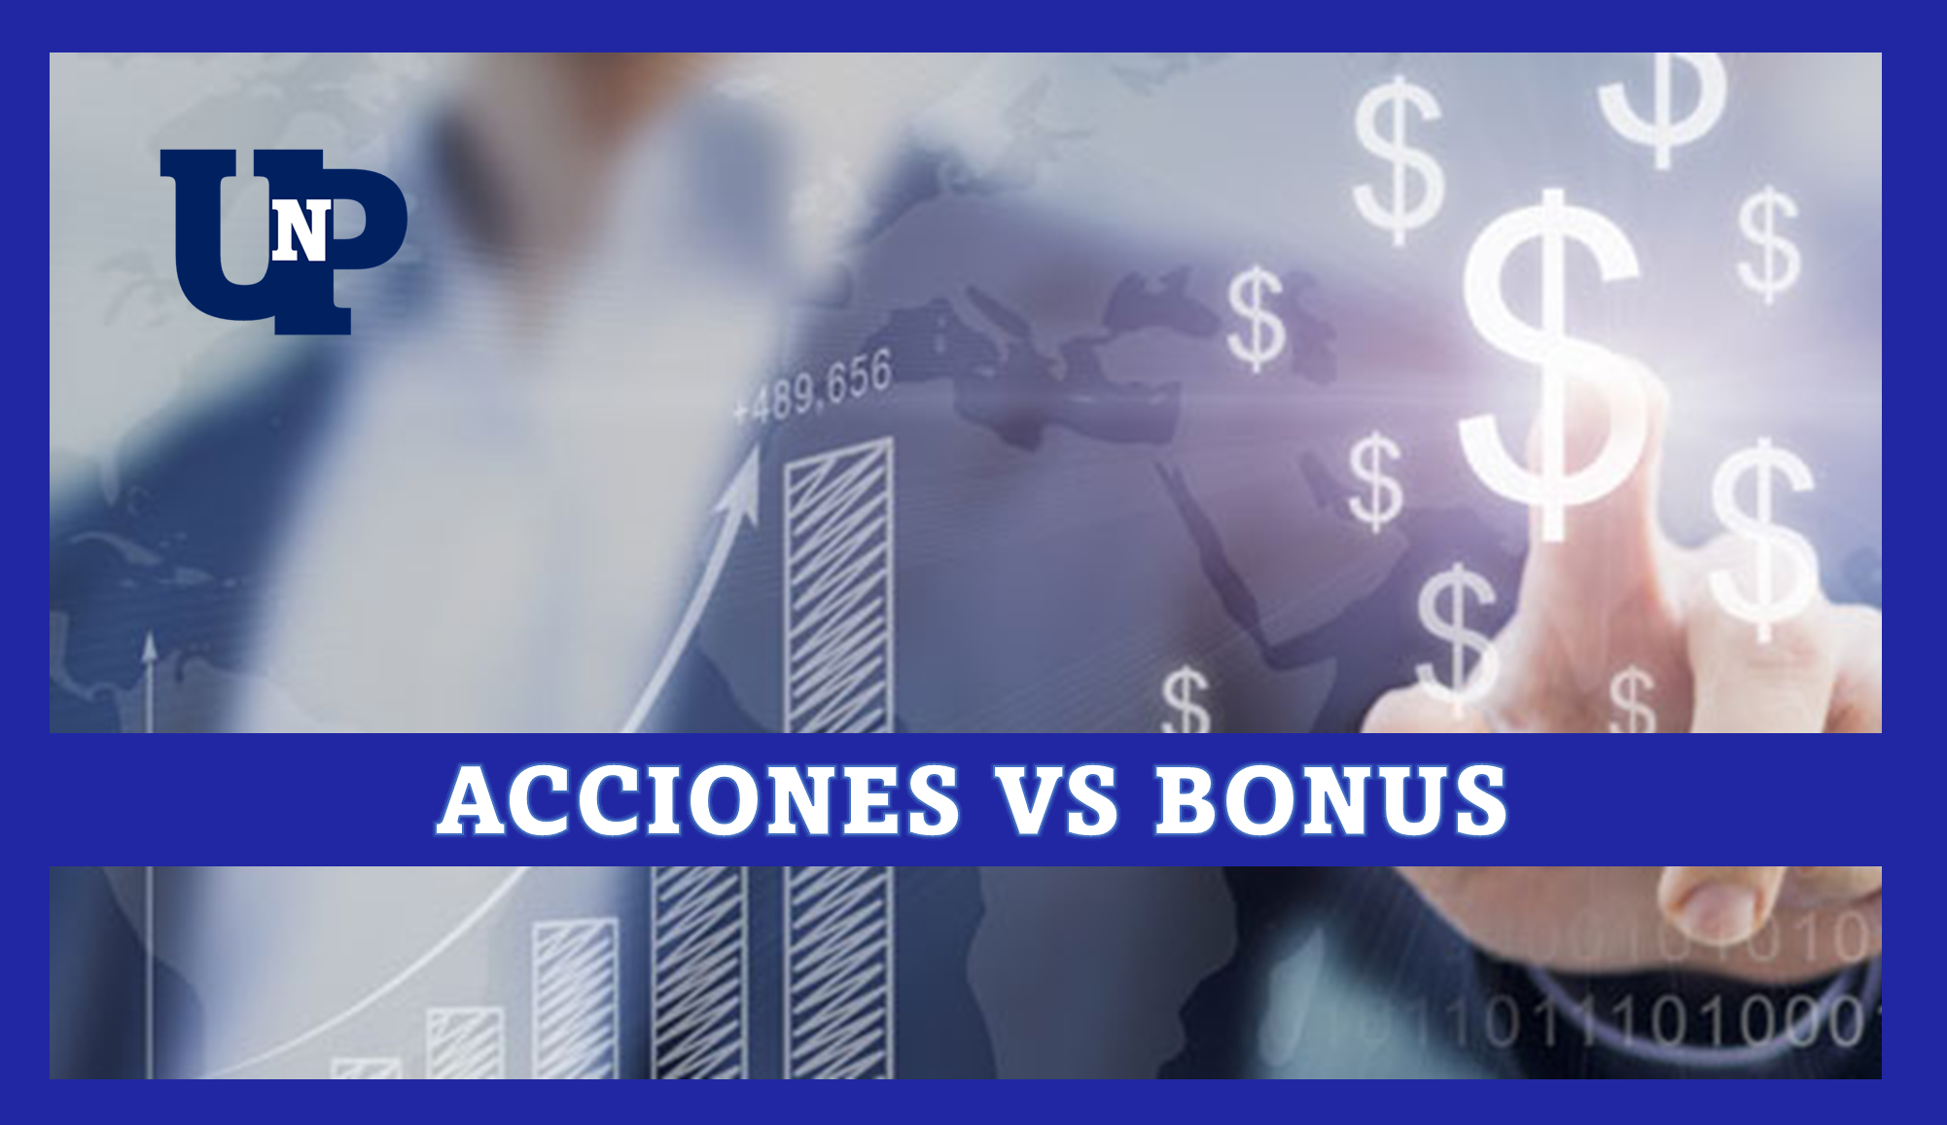 Acciones vs Bonus